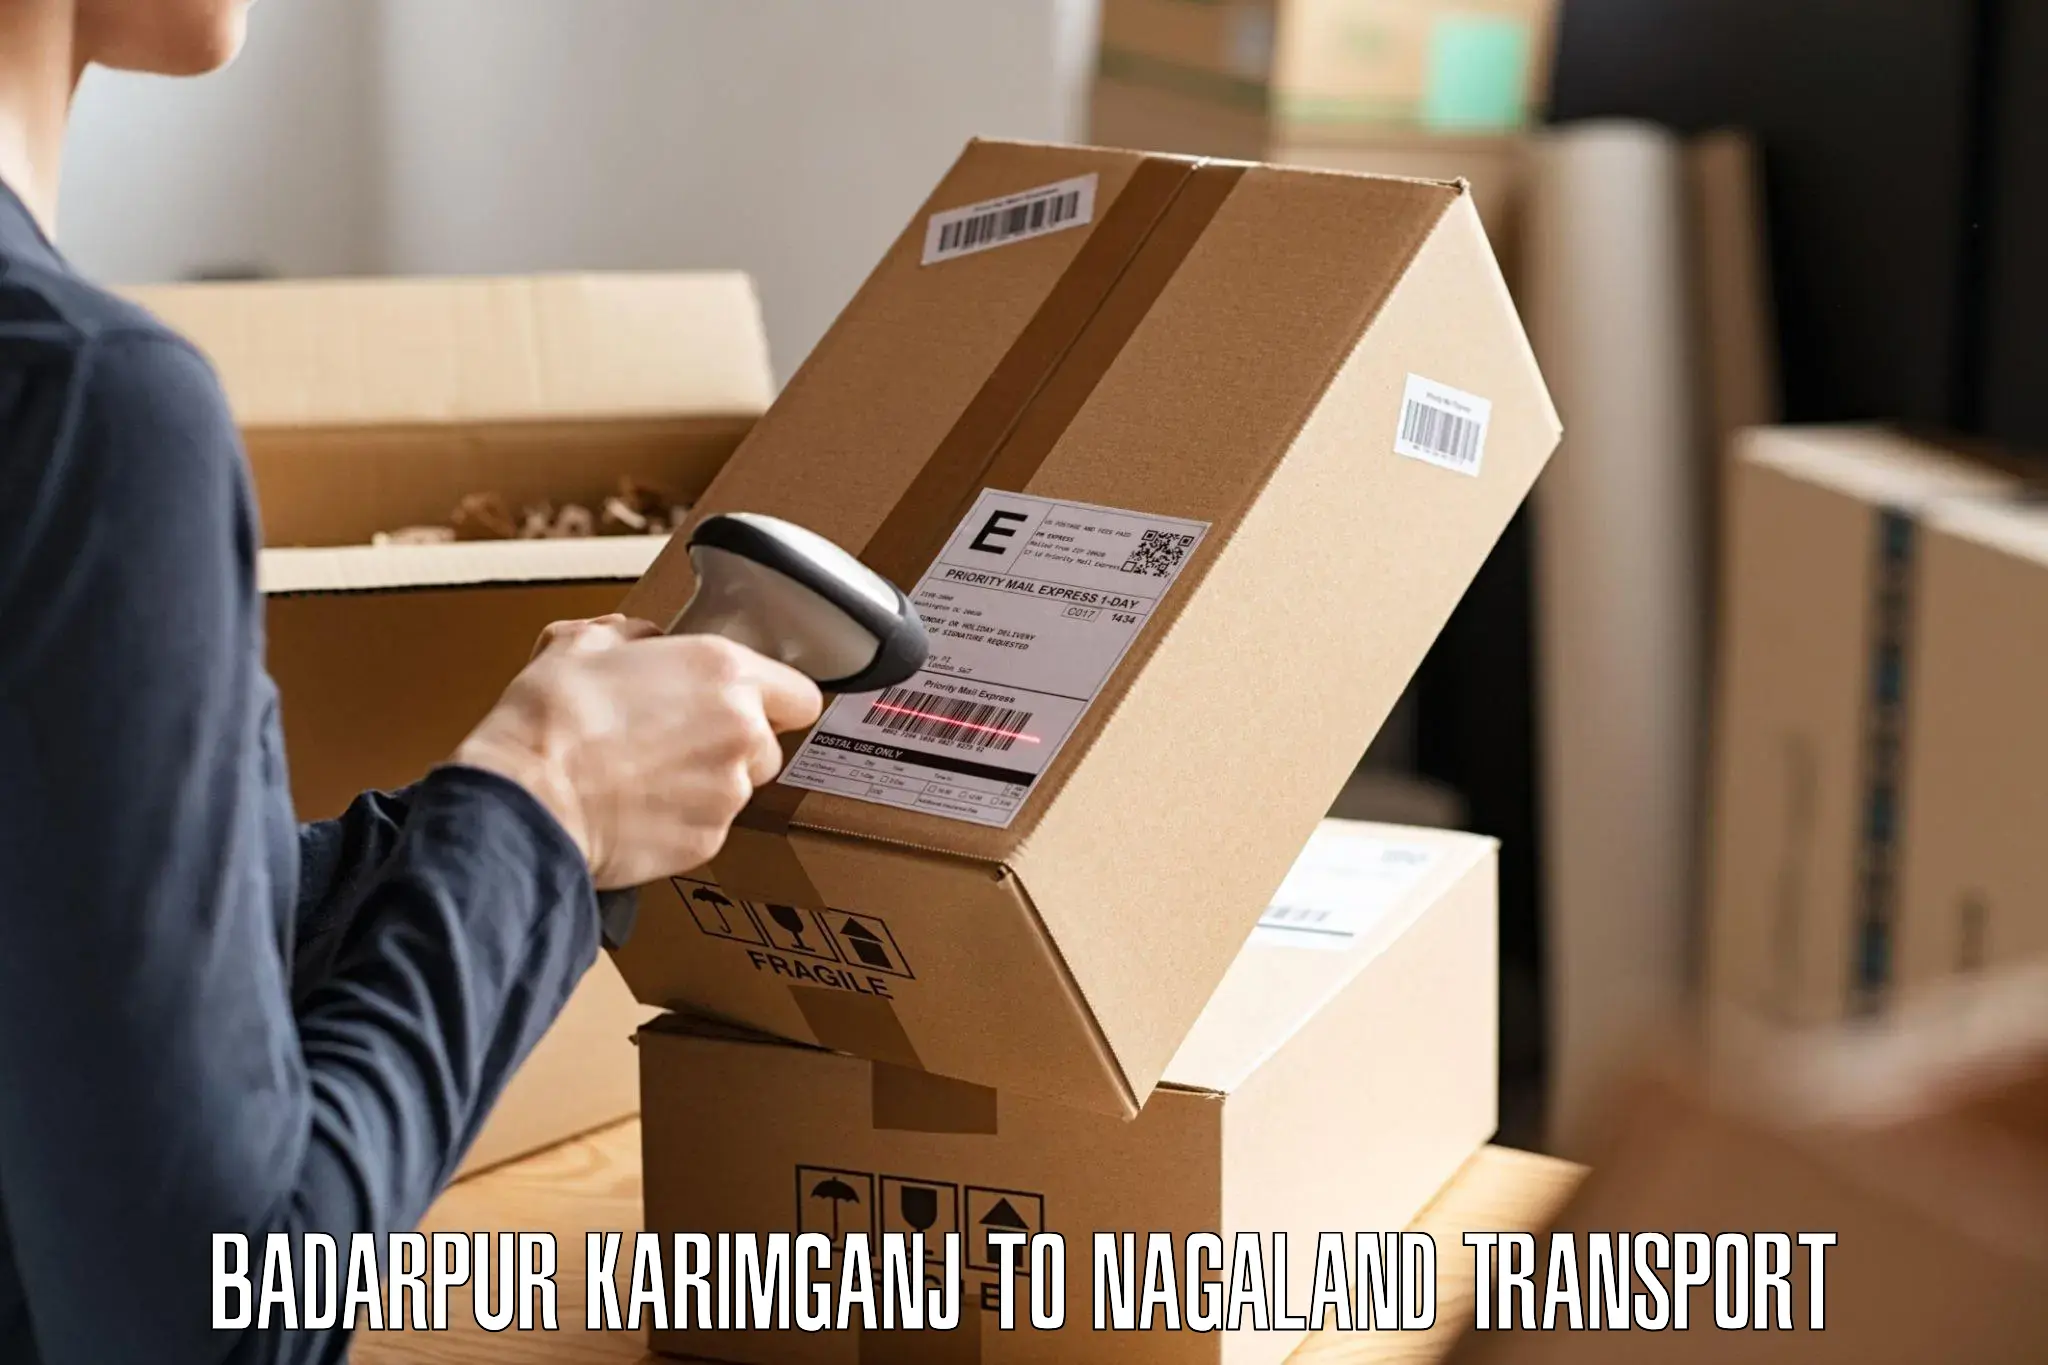 Daily transport service Badarpur Karimganj to Nagaland